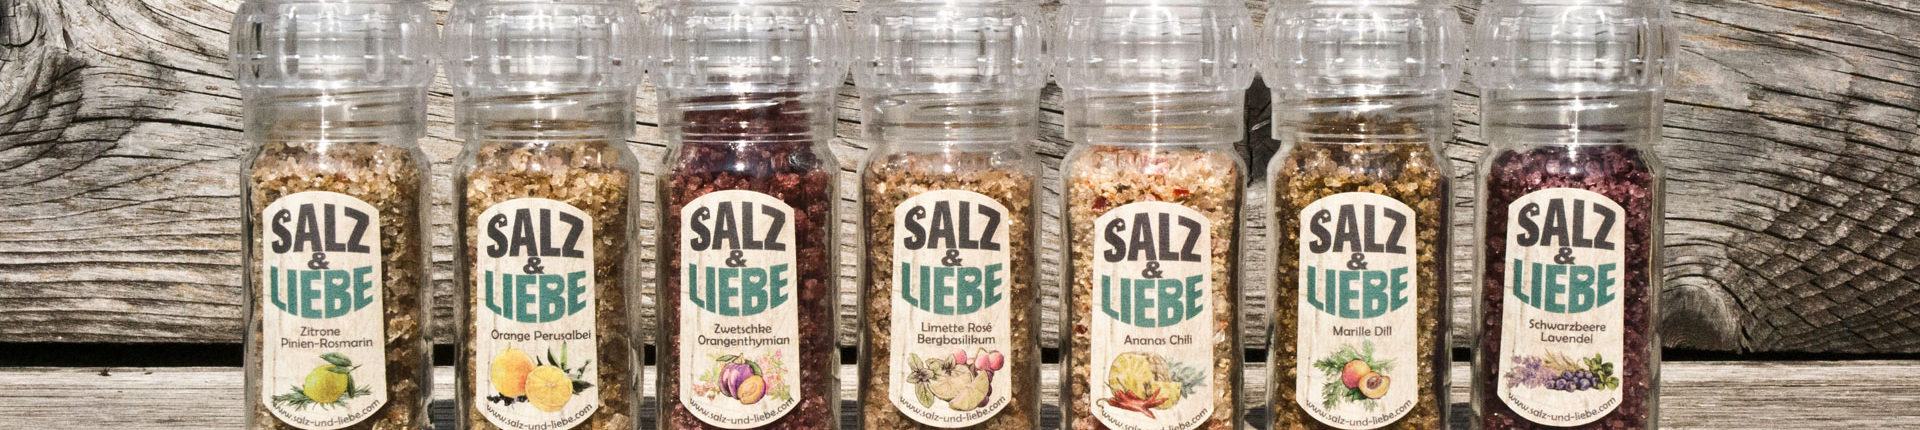 Salz und Liebe - Bergsalz mit Früchten und Kräutern in Bio Qualität